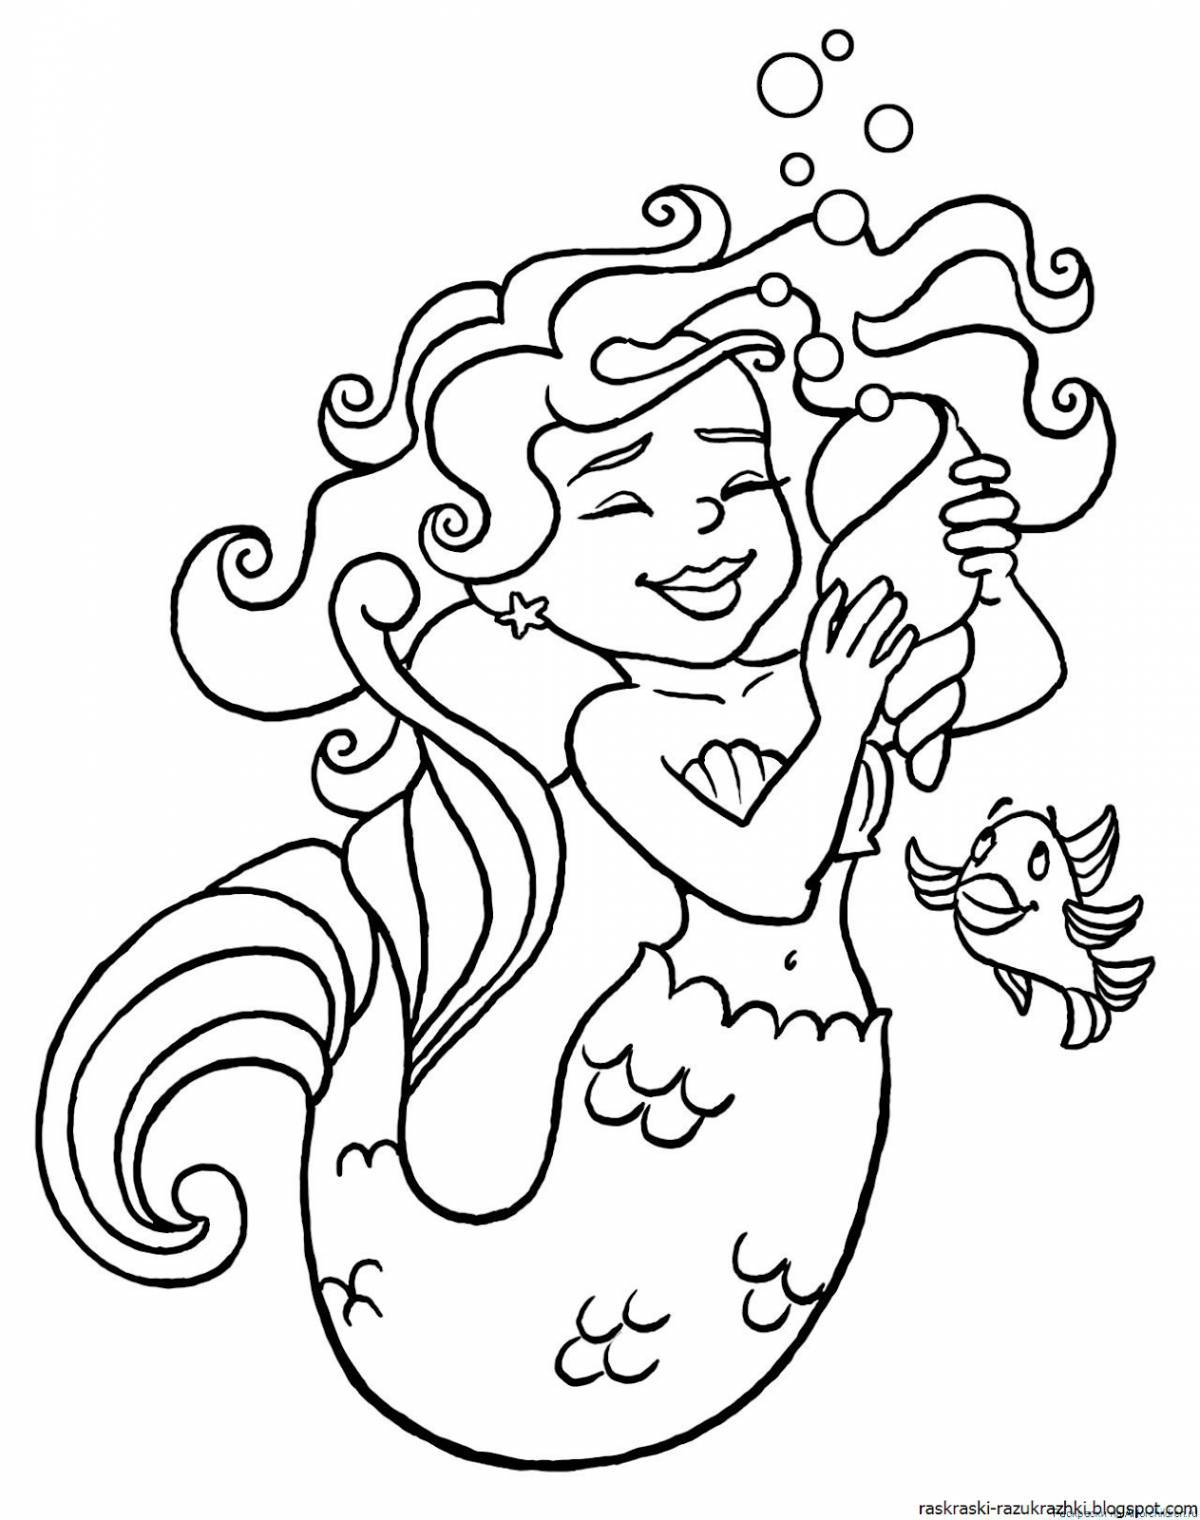 Luminous mermaid coloring book for kids